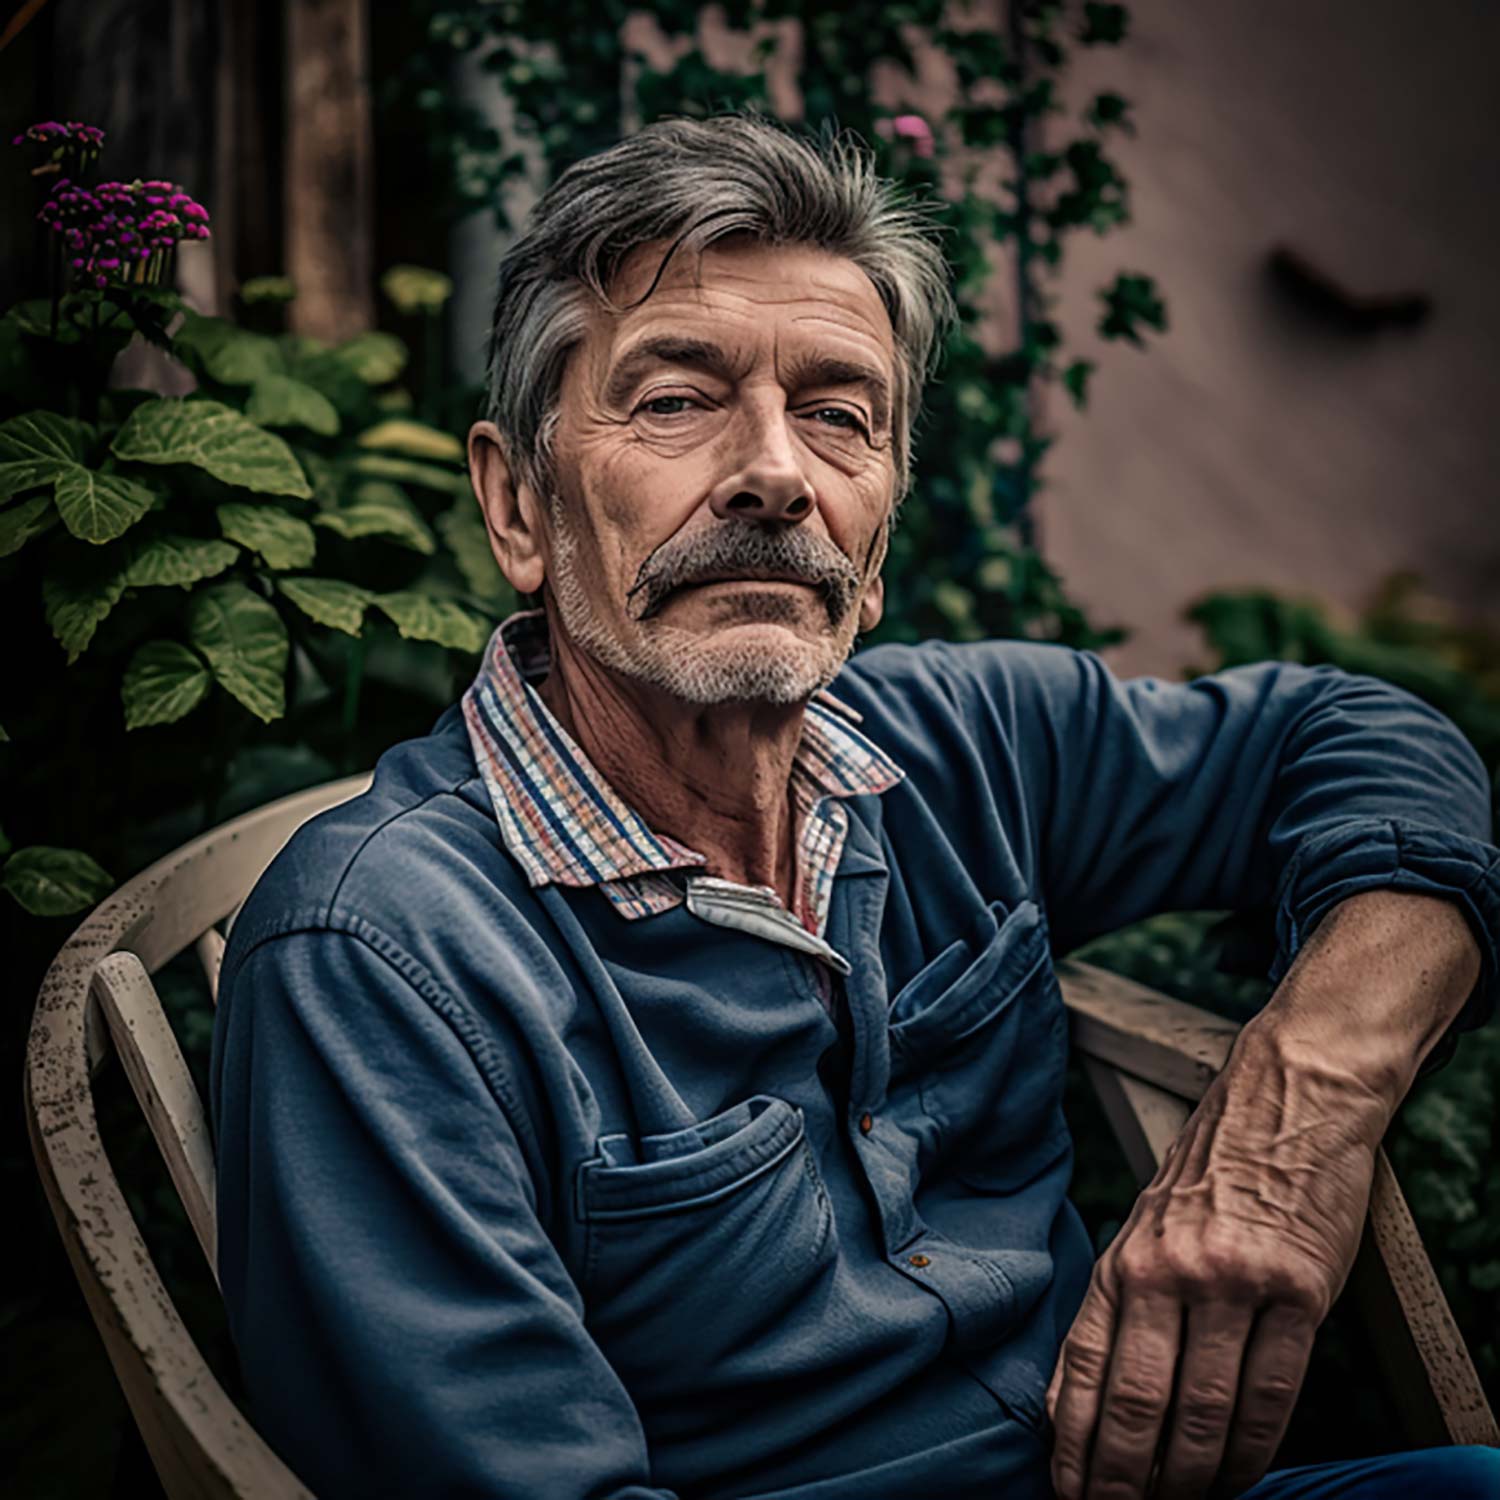 Dieses Bild zeigt eine Illustration eines älteren Mannes im Garten sitzend.